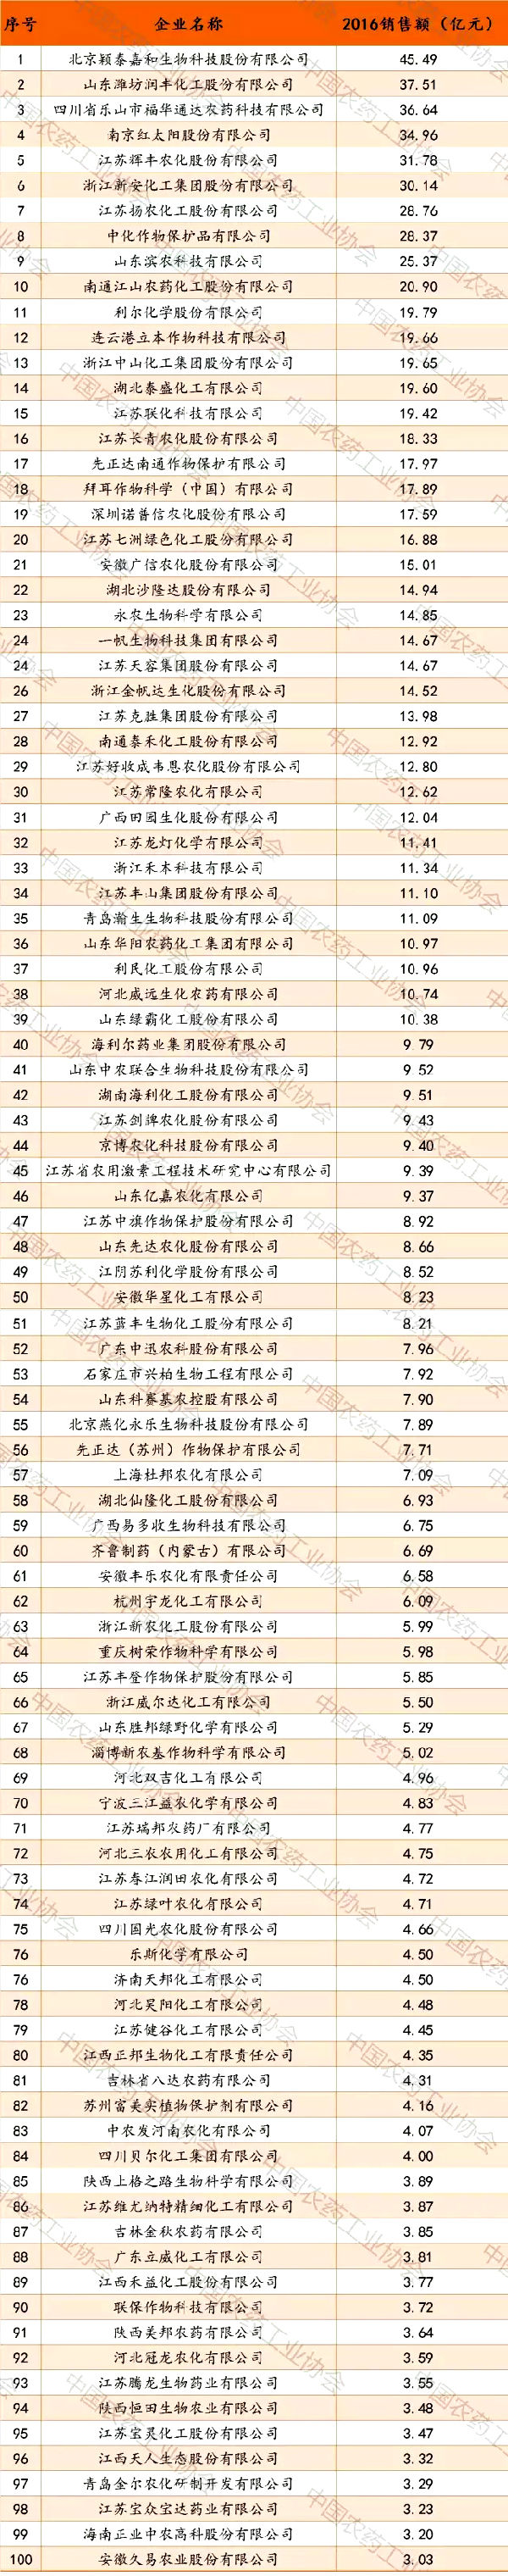 2017中国农药行业销售百强榜发布